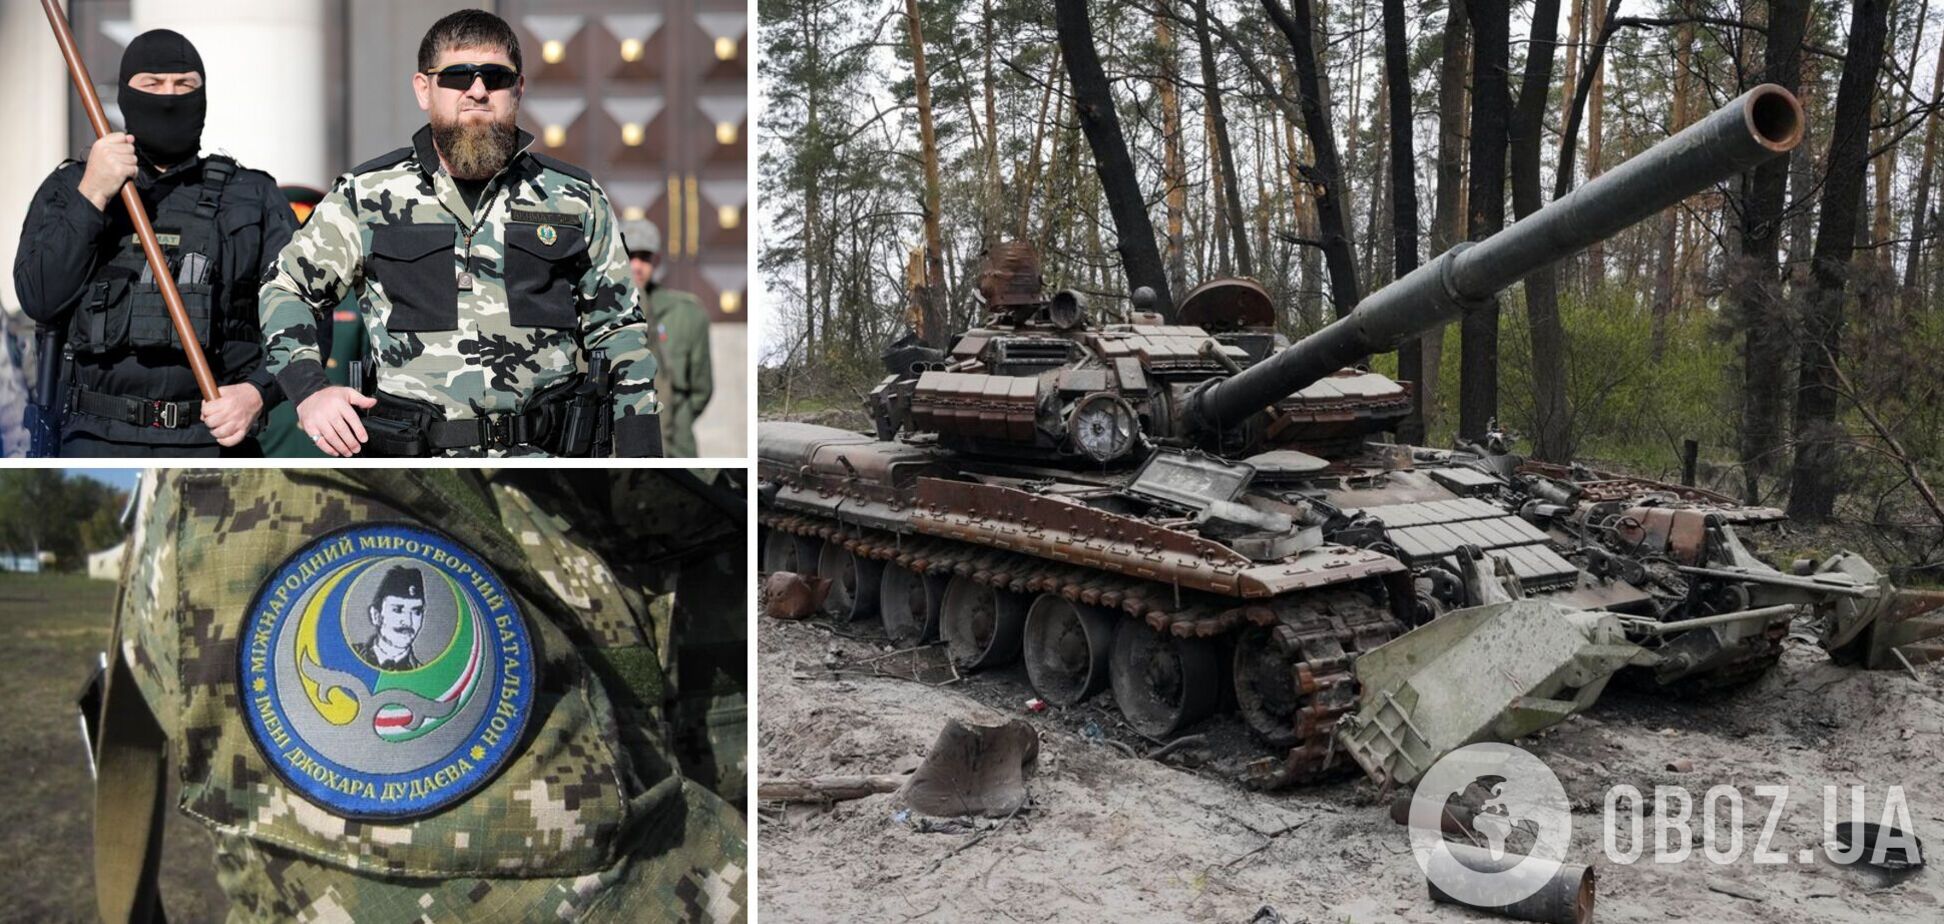 Кадыров пообещал $1 млн за данные о батальонах имени шейха Мансура и Дудаева, воюющих против РФ в Украине